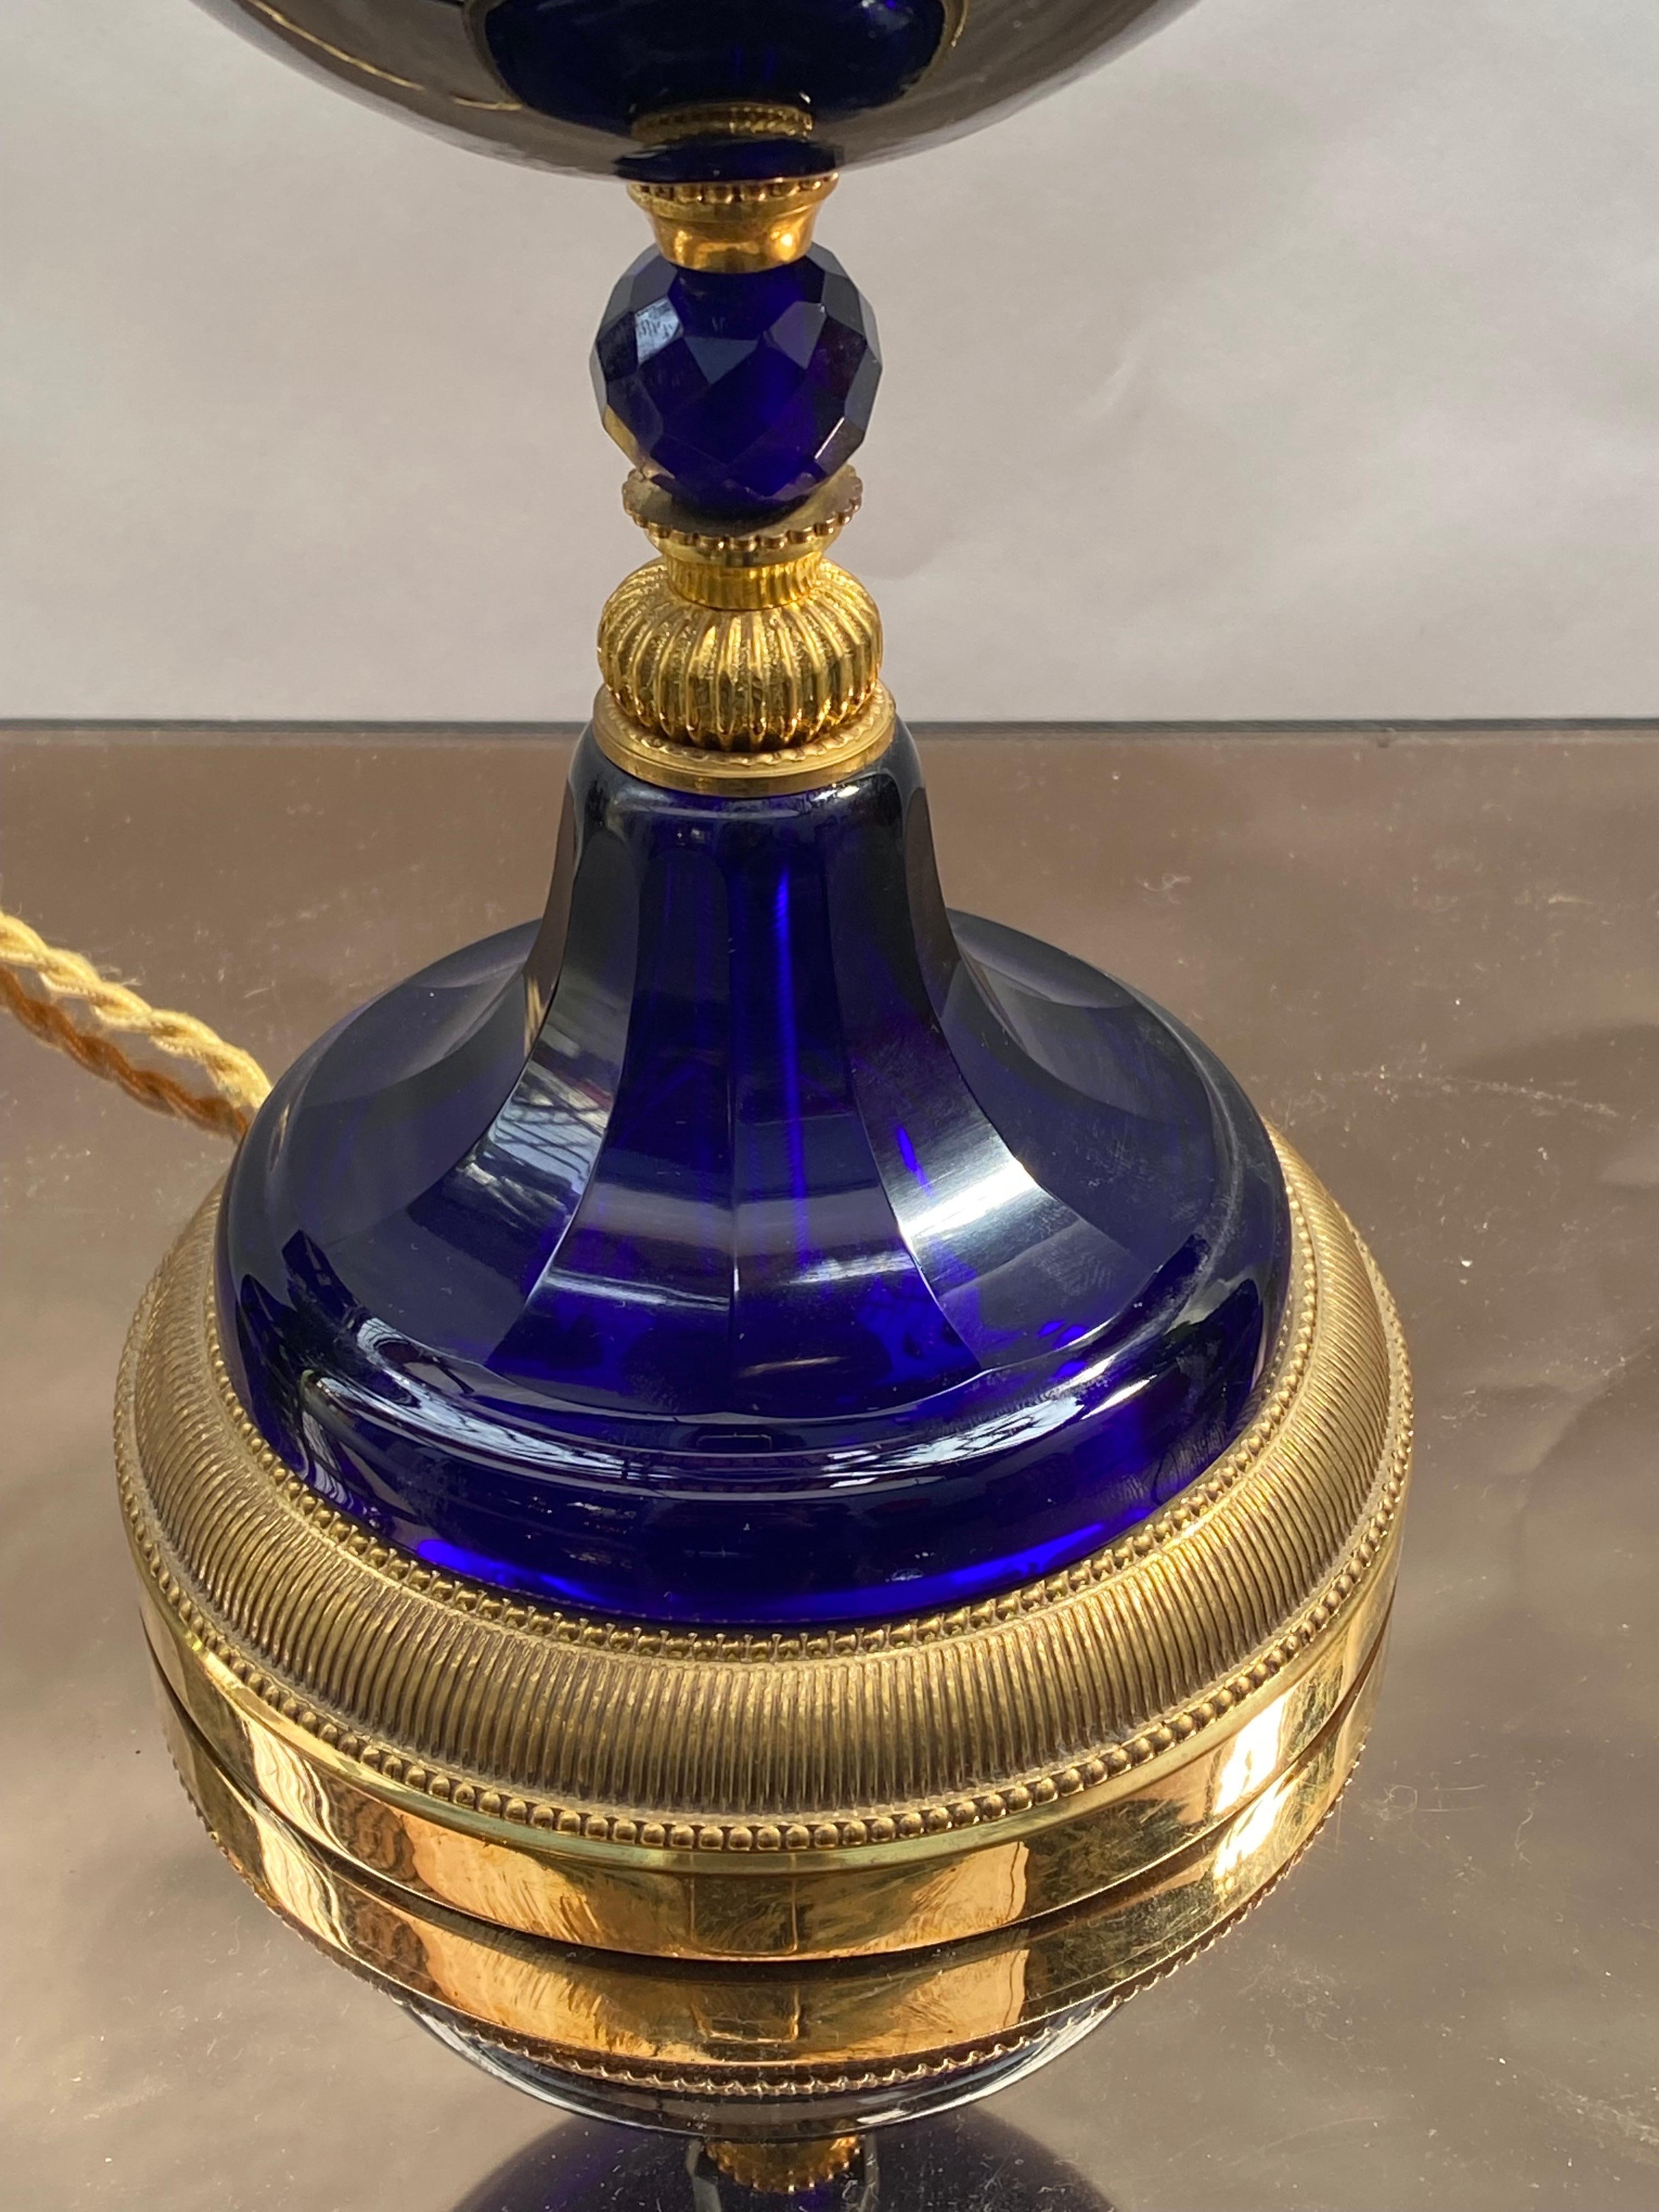 Pied de lampe en cristal bleu saphir, bronze doré. Les pièces en cristal proviennent de l'une des plus anciennes verreries de Paris, la Maison König, rue pastourelle. Malheureusement, cette maison n'existe plus, mais ses cristaux taillés en